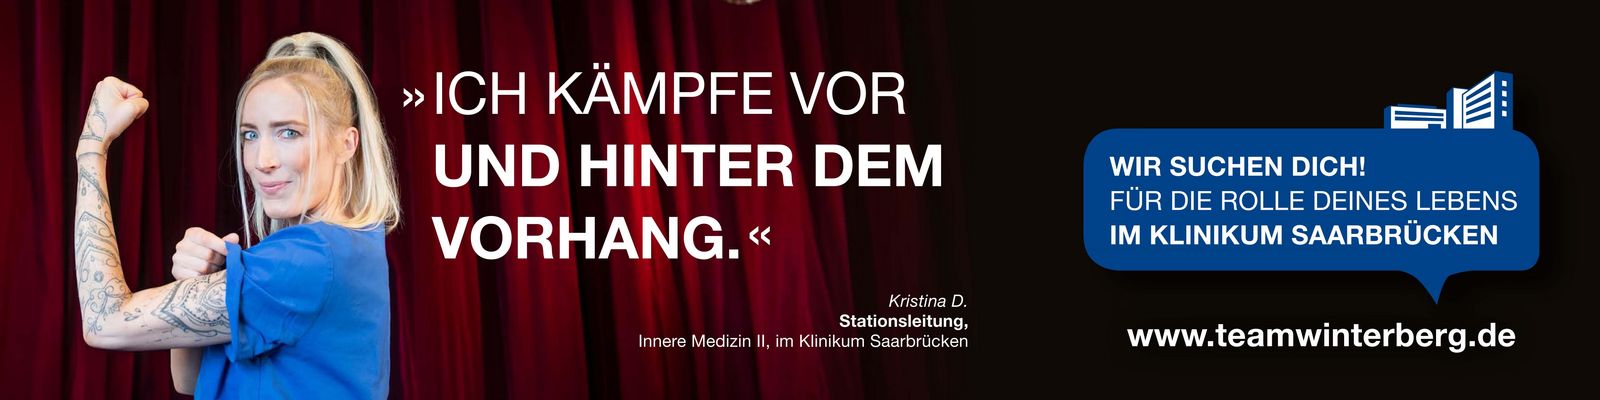 Pflegefachkraft des Klinikums Saarbrücken im Theater: Ich kämpfe vor und hinter dem Vorhang. Pflegekampagne_KristinaD.jpg